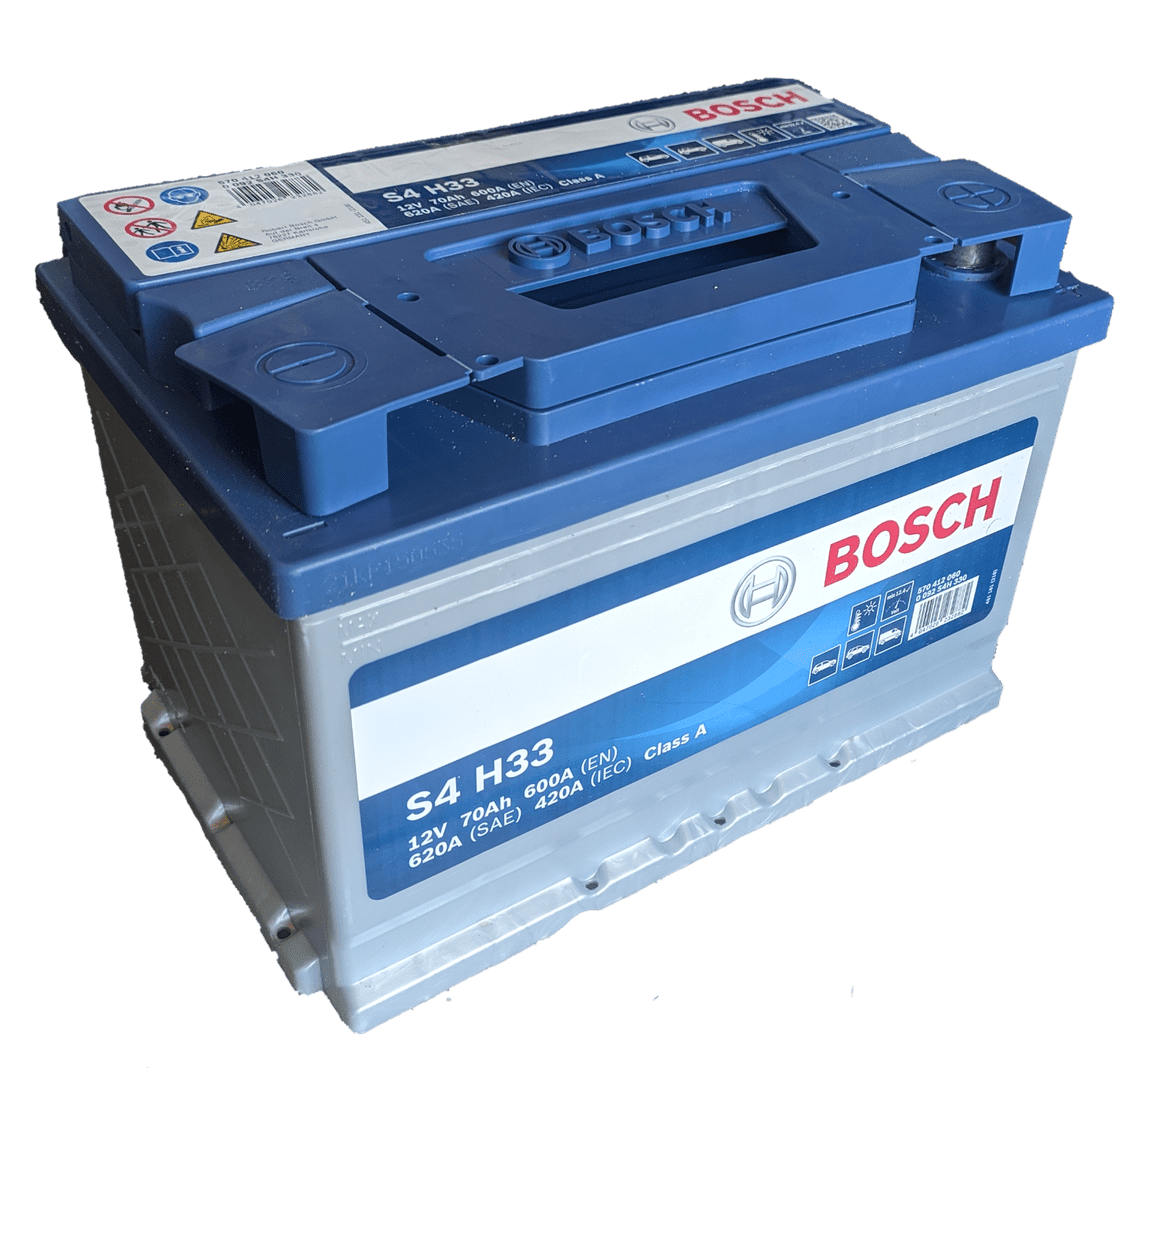 BOSCH L3 S4H33 12V 70AH – Battery service